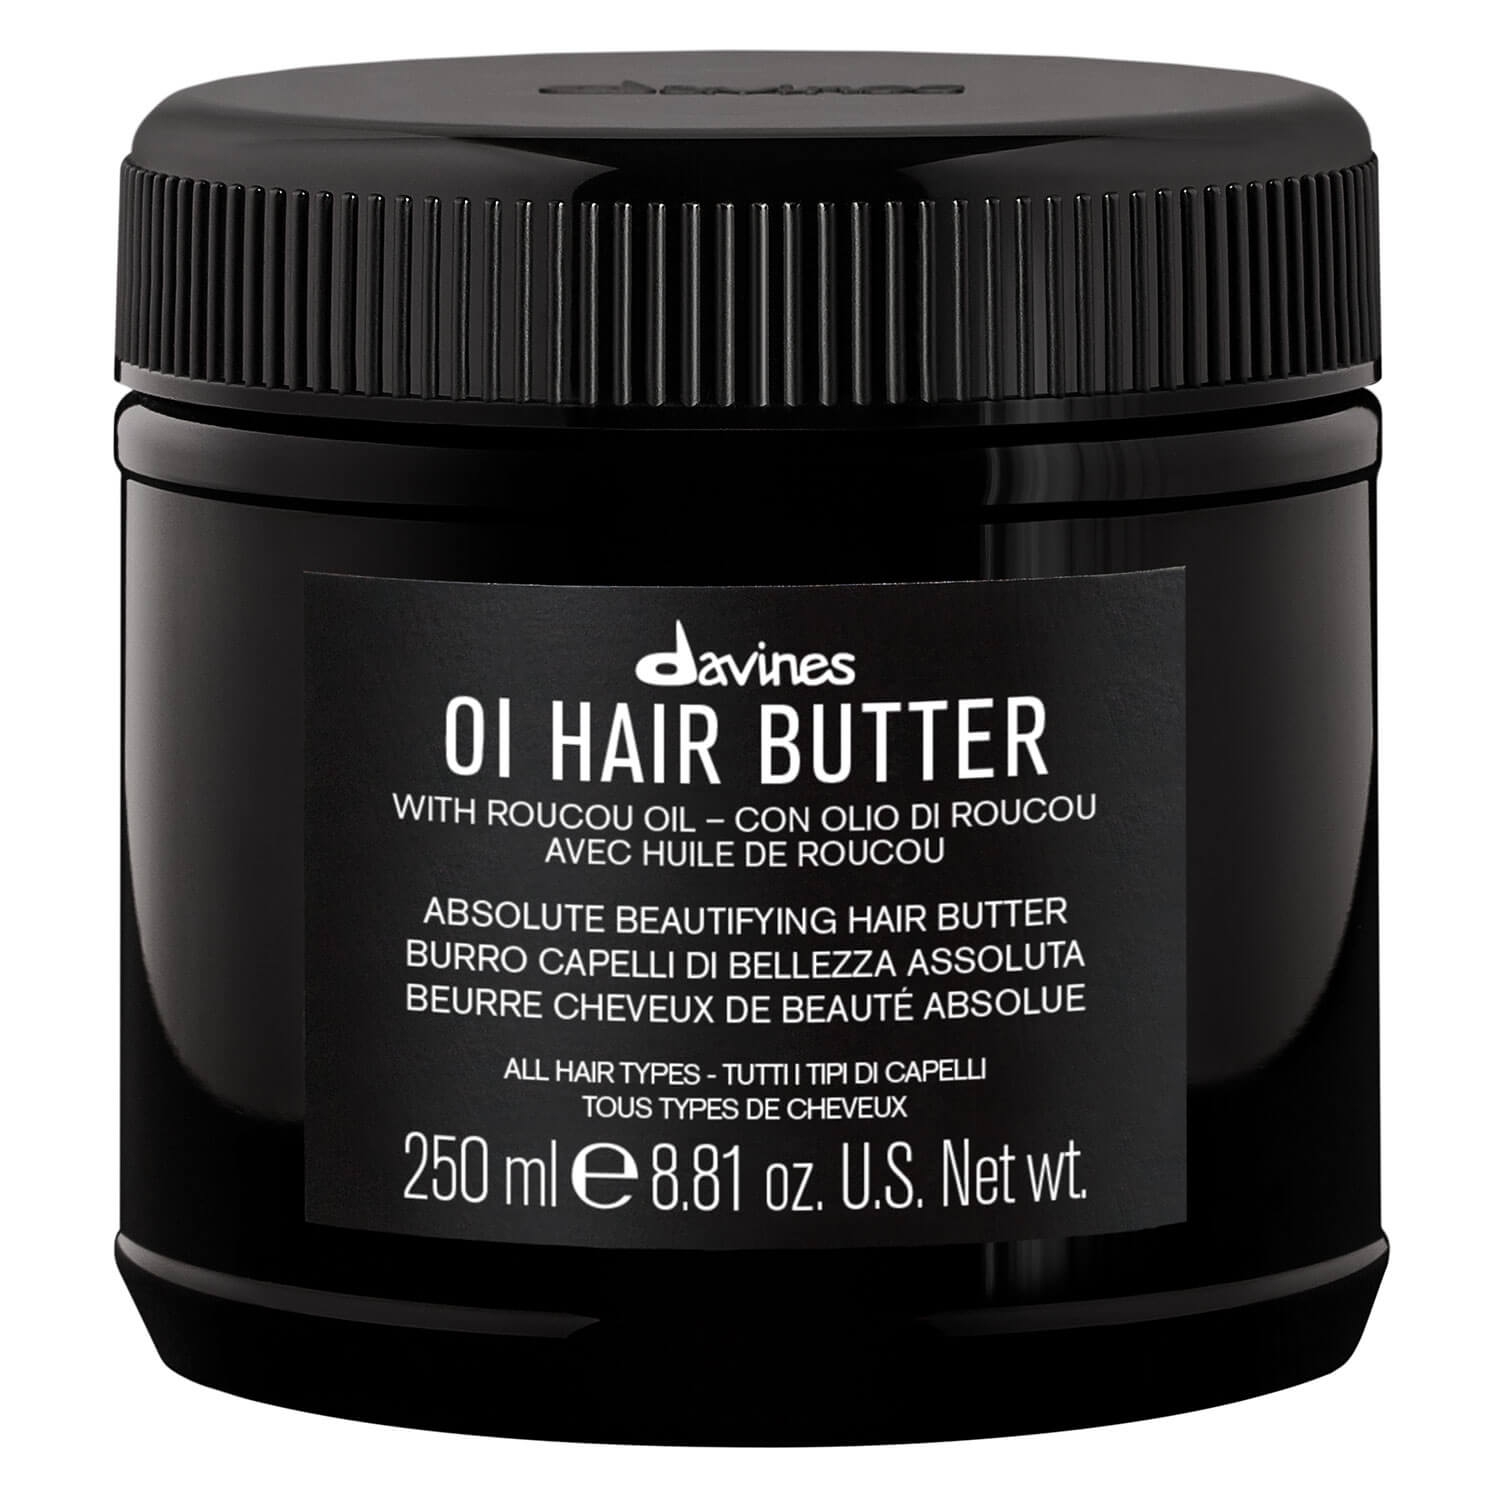 Produktbild von Oi - Hair Butter